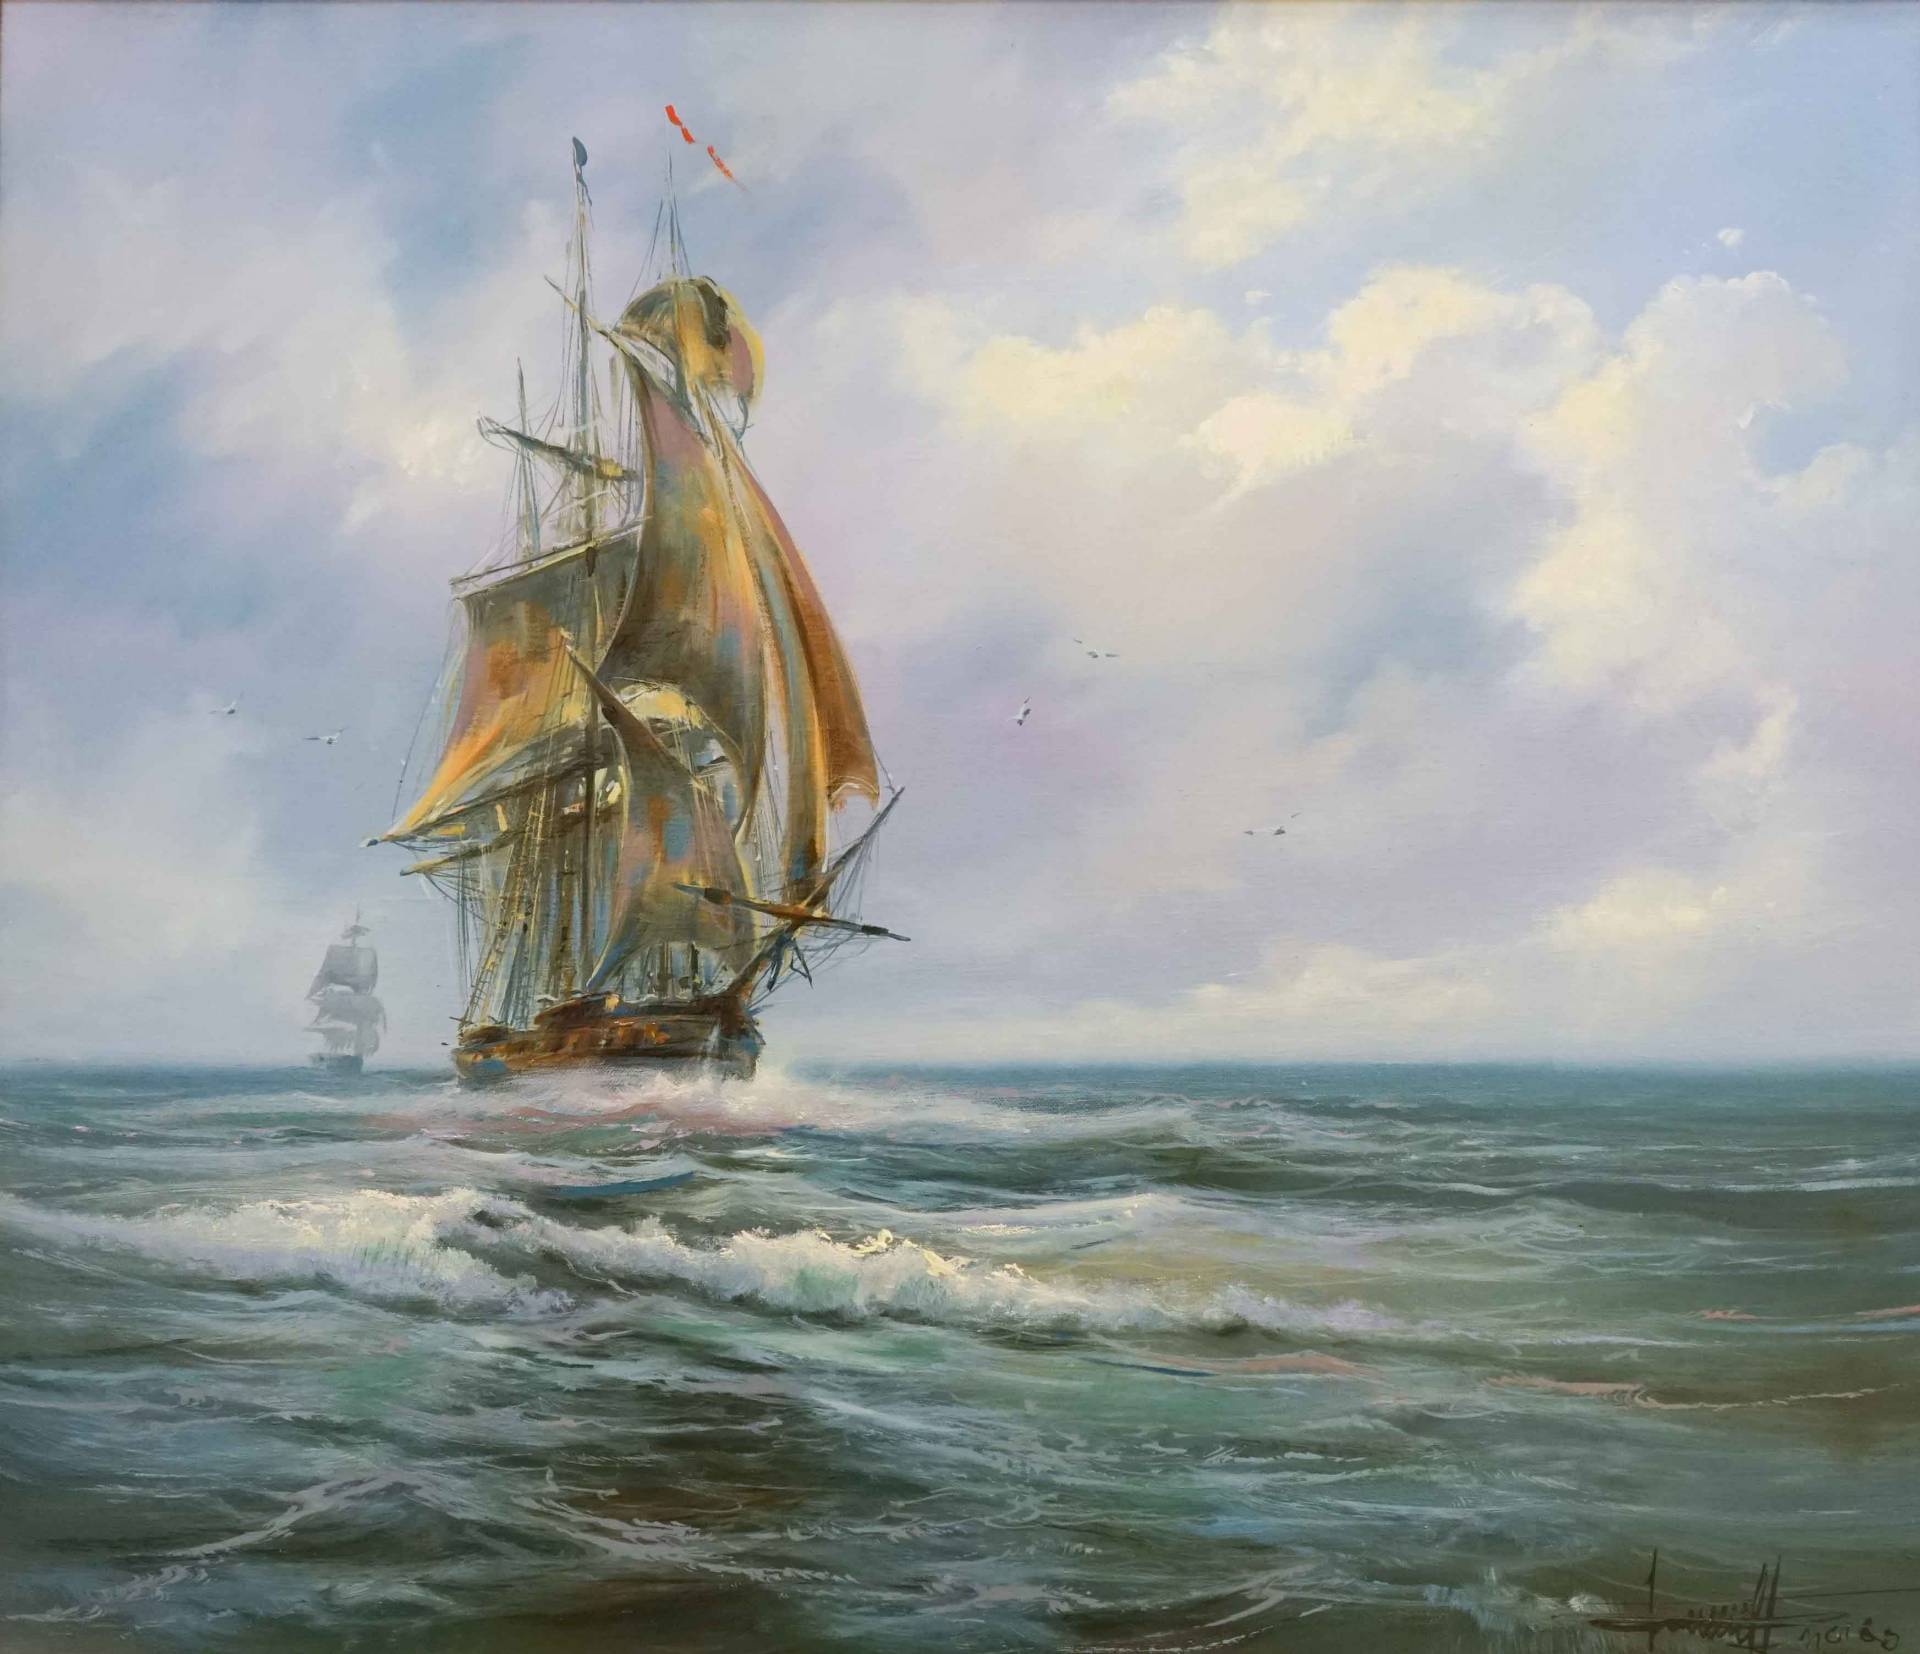 帆船 - 1, Dmitry Balakhonov, 买画 油